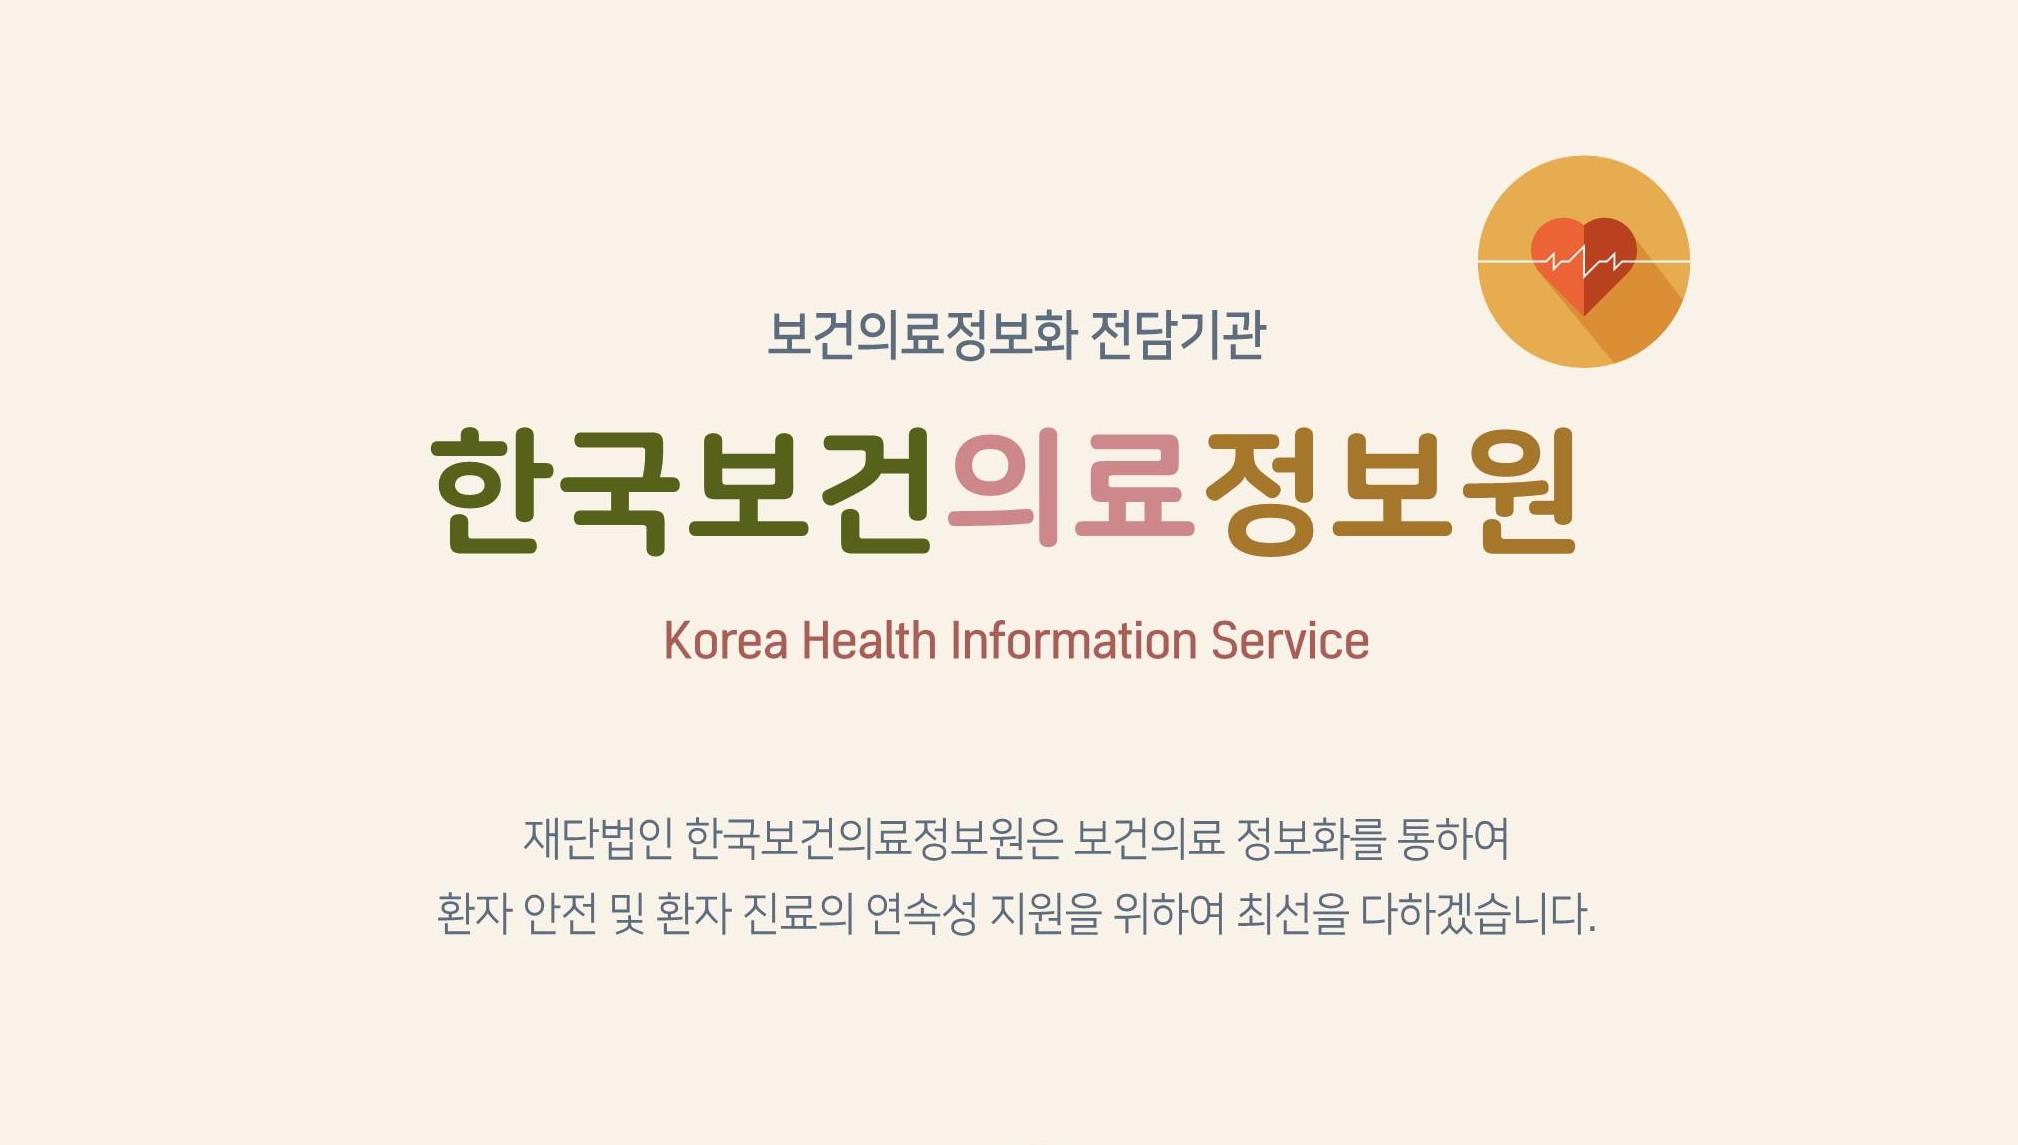 한국보건의료정보원 리플렛 제작(2020.12.30 기준)